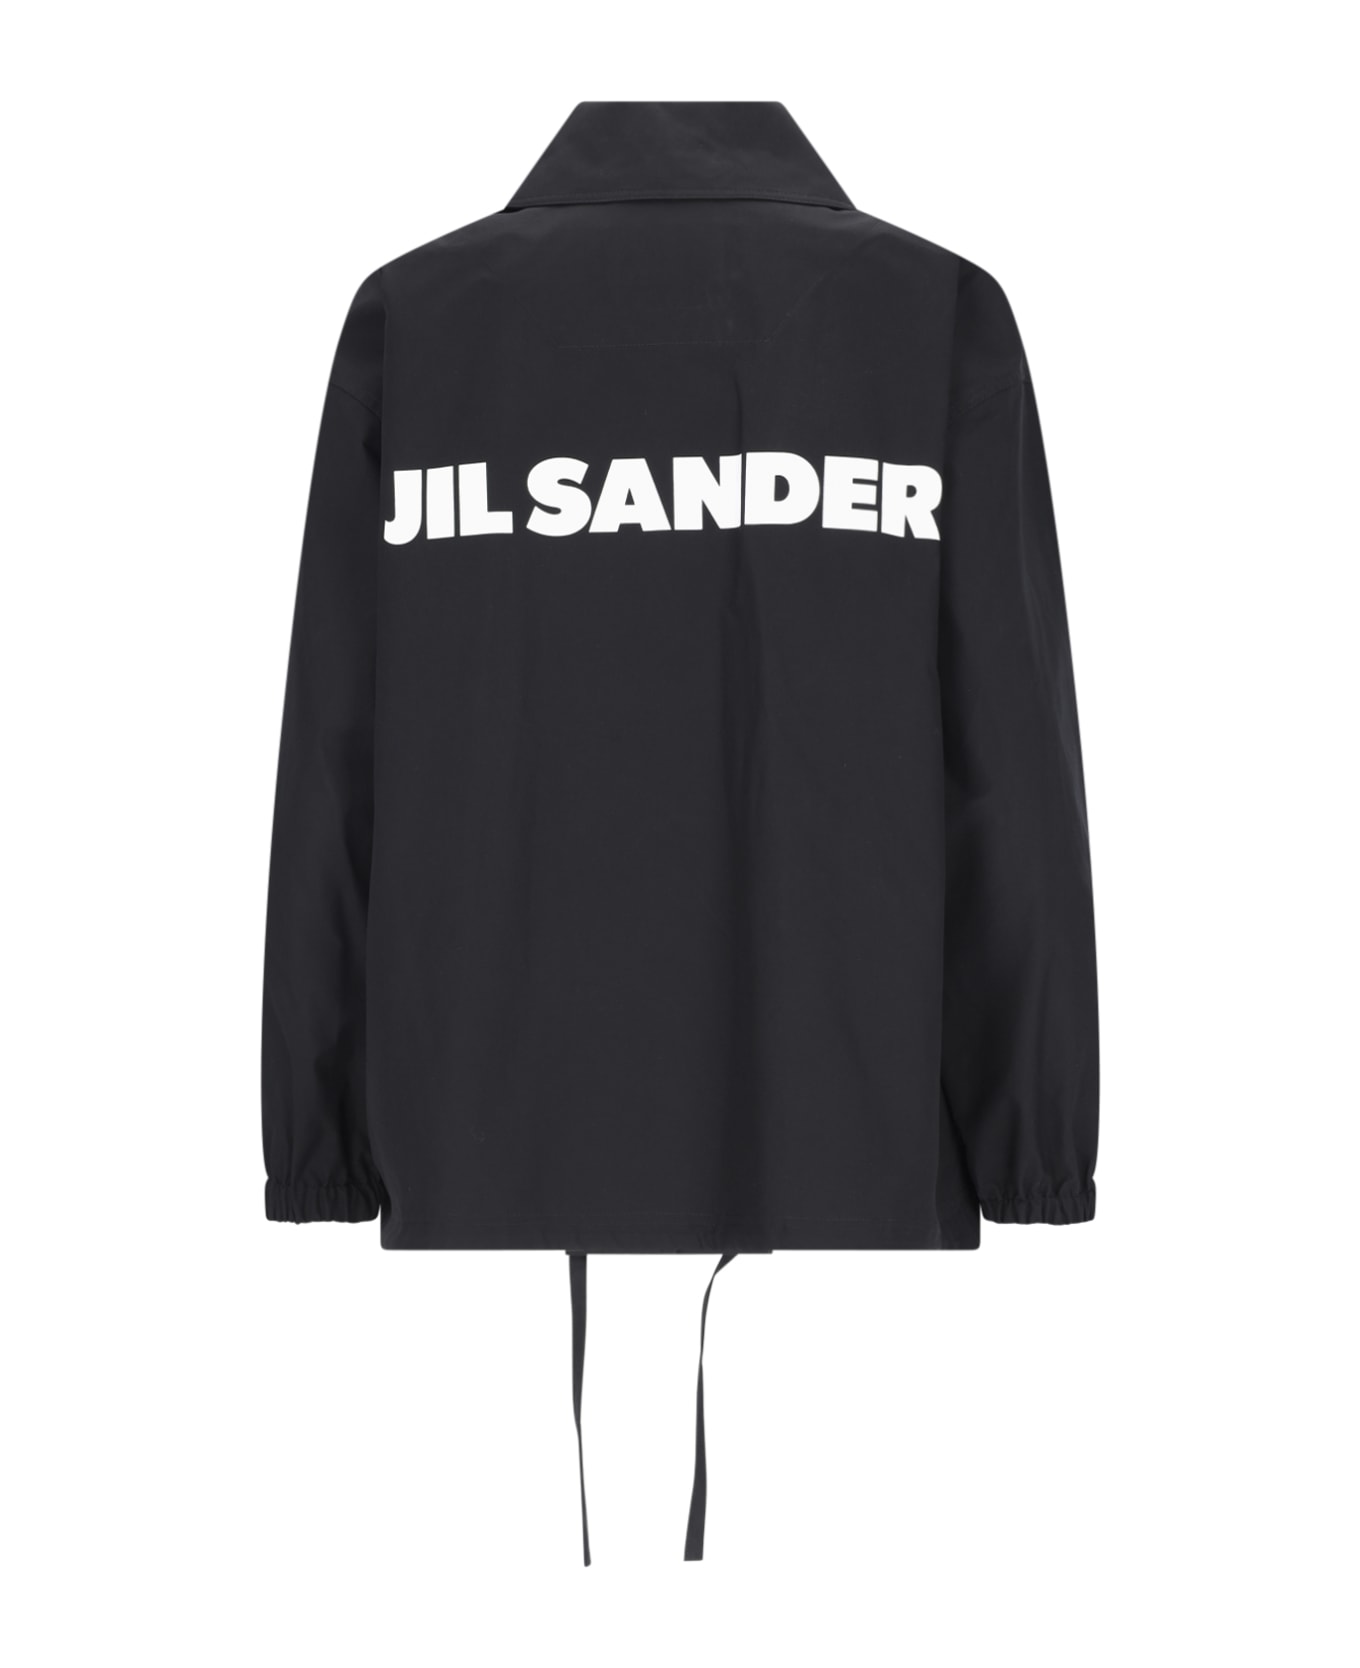 Jil Sander Back Logo Jacket - Black   シャツ